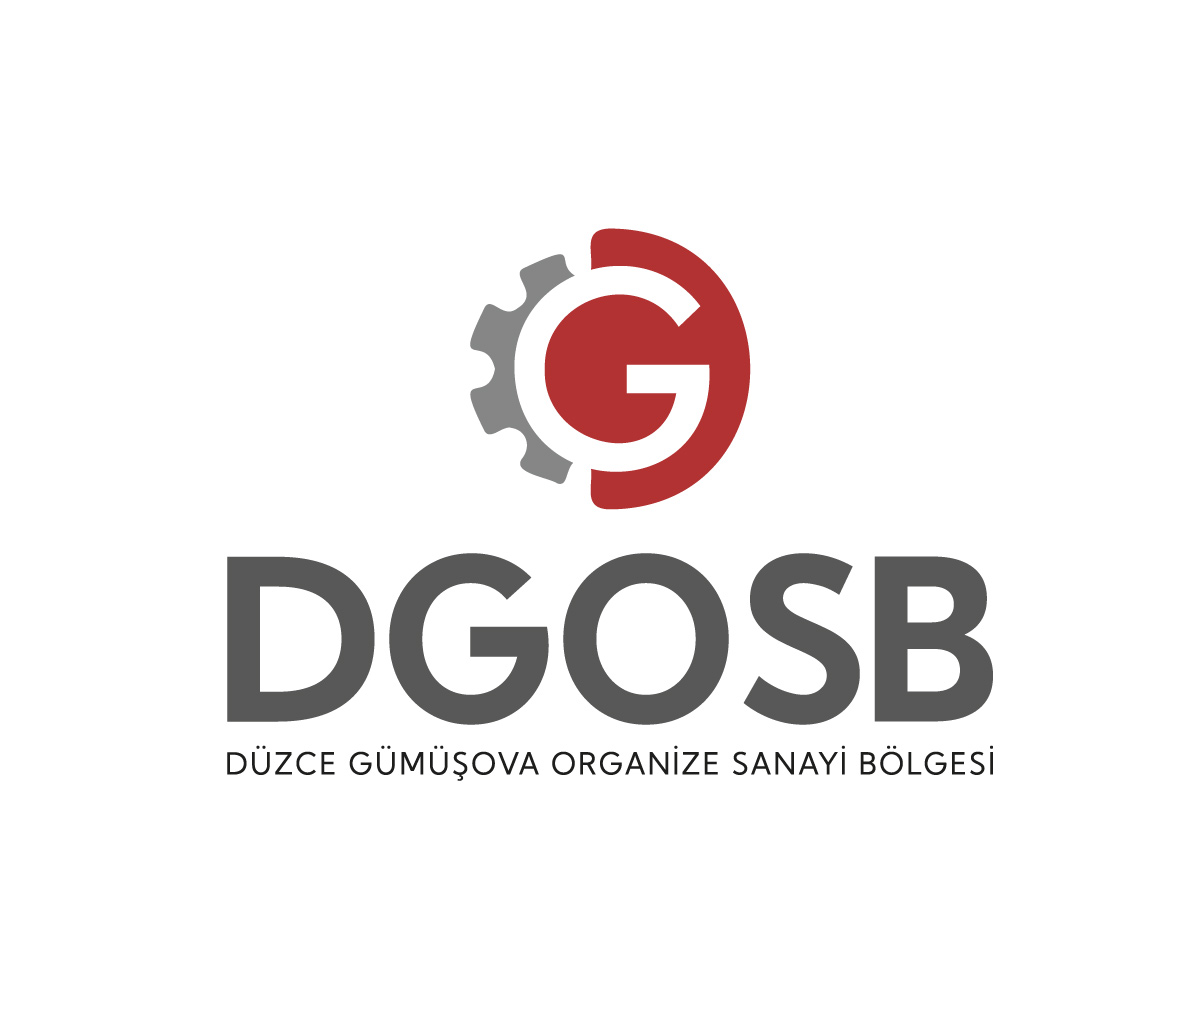 Düzce GOSB Logosu